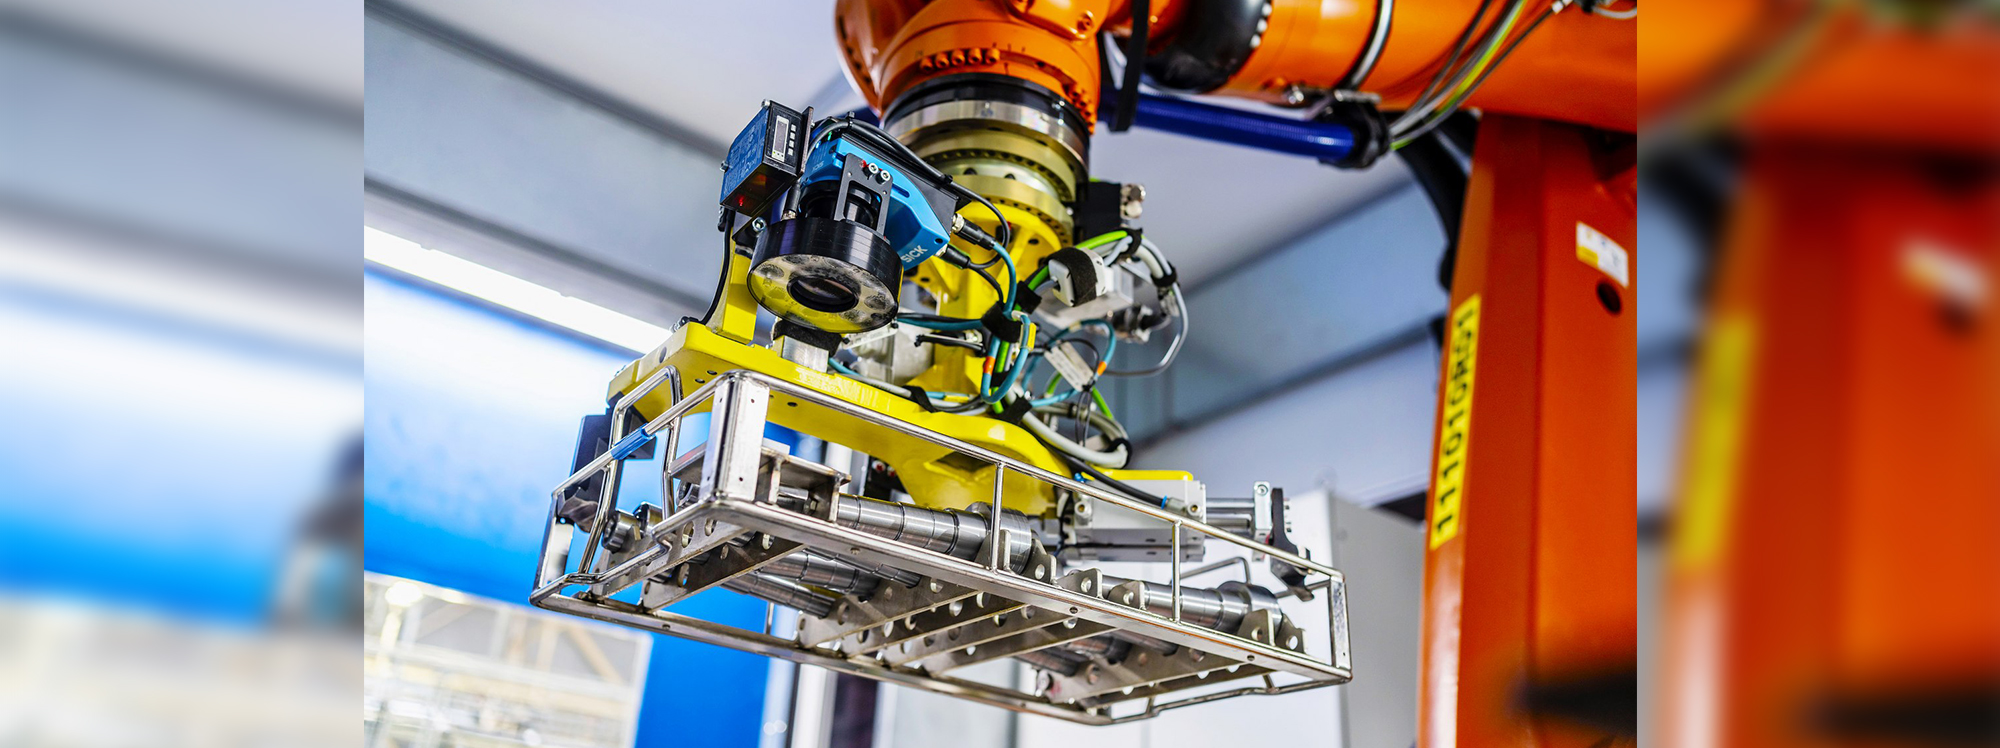 Robots inteligentes podrían fabricar su próximo auto